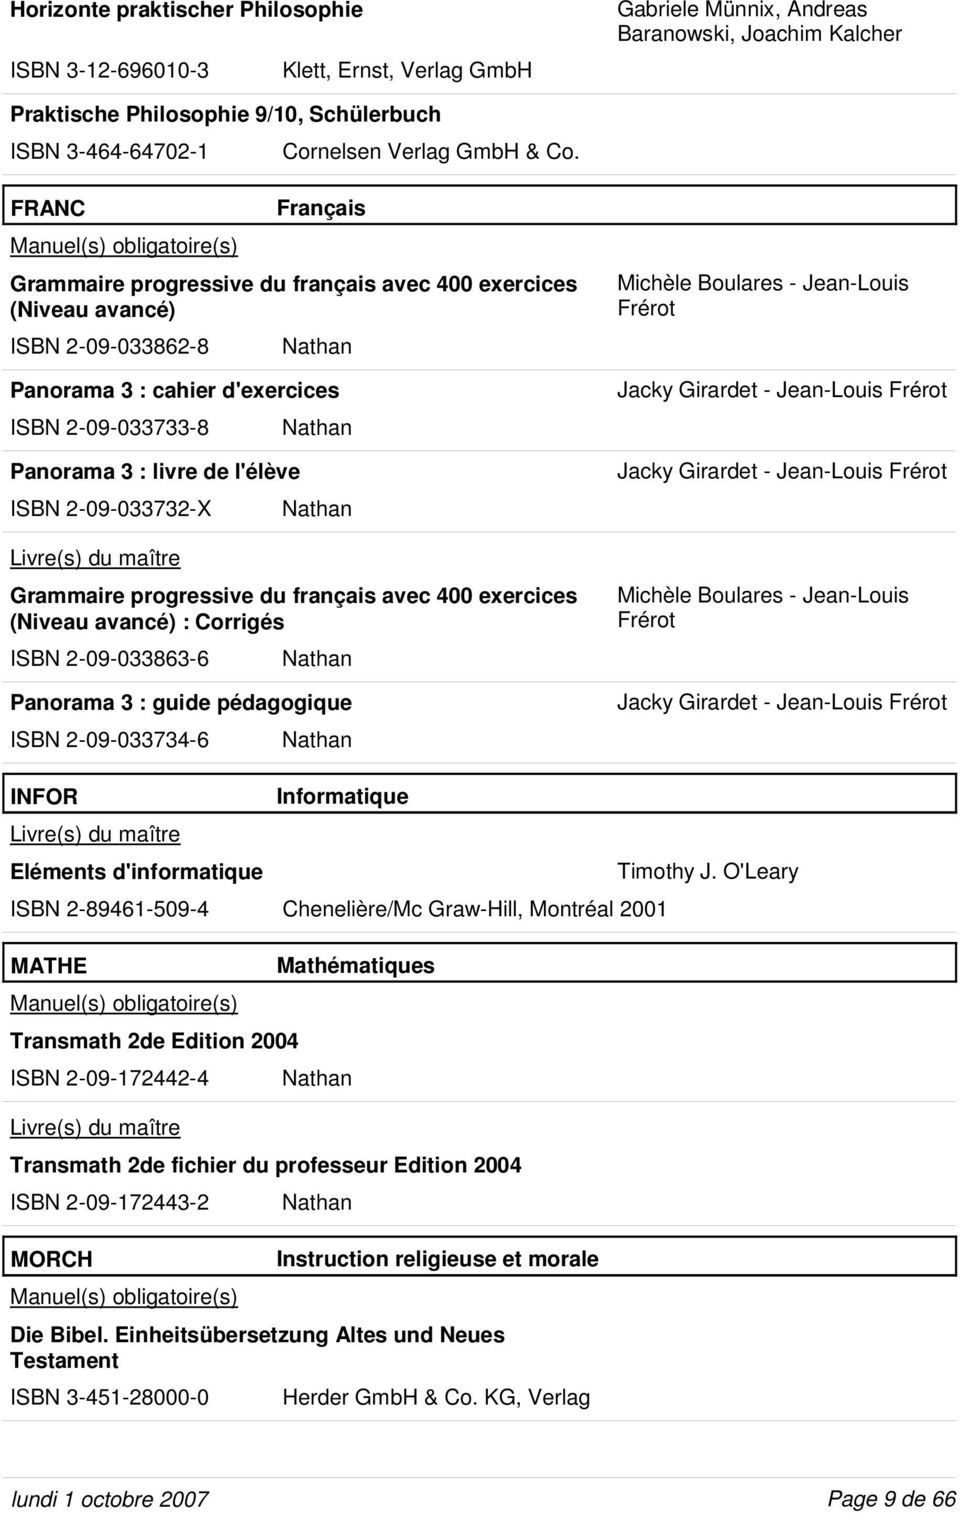 FRANC Français Grammaire progressive du français avec 400 exercices (Niveau avancé) ISBN 2-09-033862-8 Nathan Panorama 3 : cahier d'exercices ISBN 2-09-033733-8 Nathan Panorama 3 : livre de l'élève